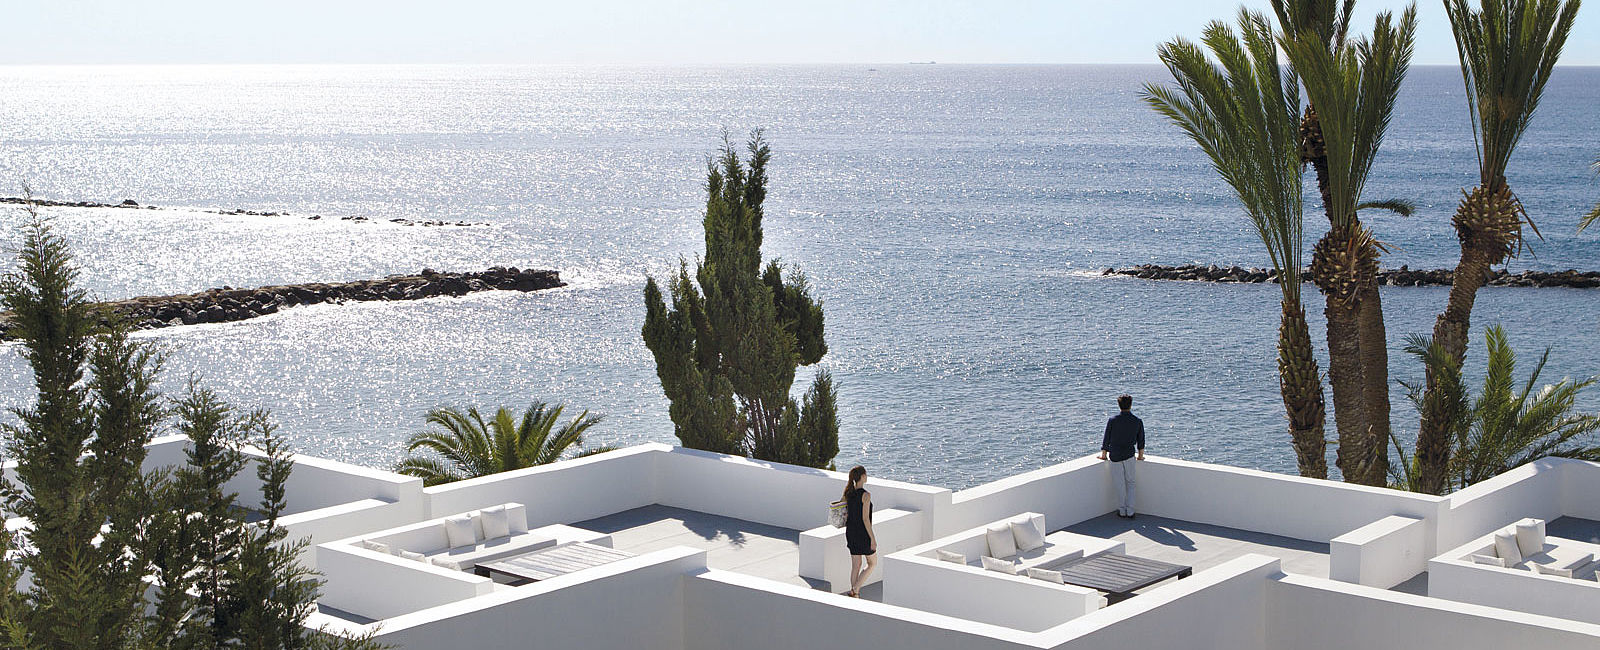 VERY SPECIAL HOTEL
 Thanos Almyra, Zypern 
 Der Hotspot auf der Insel 